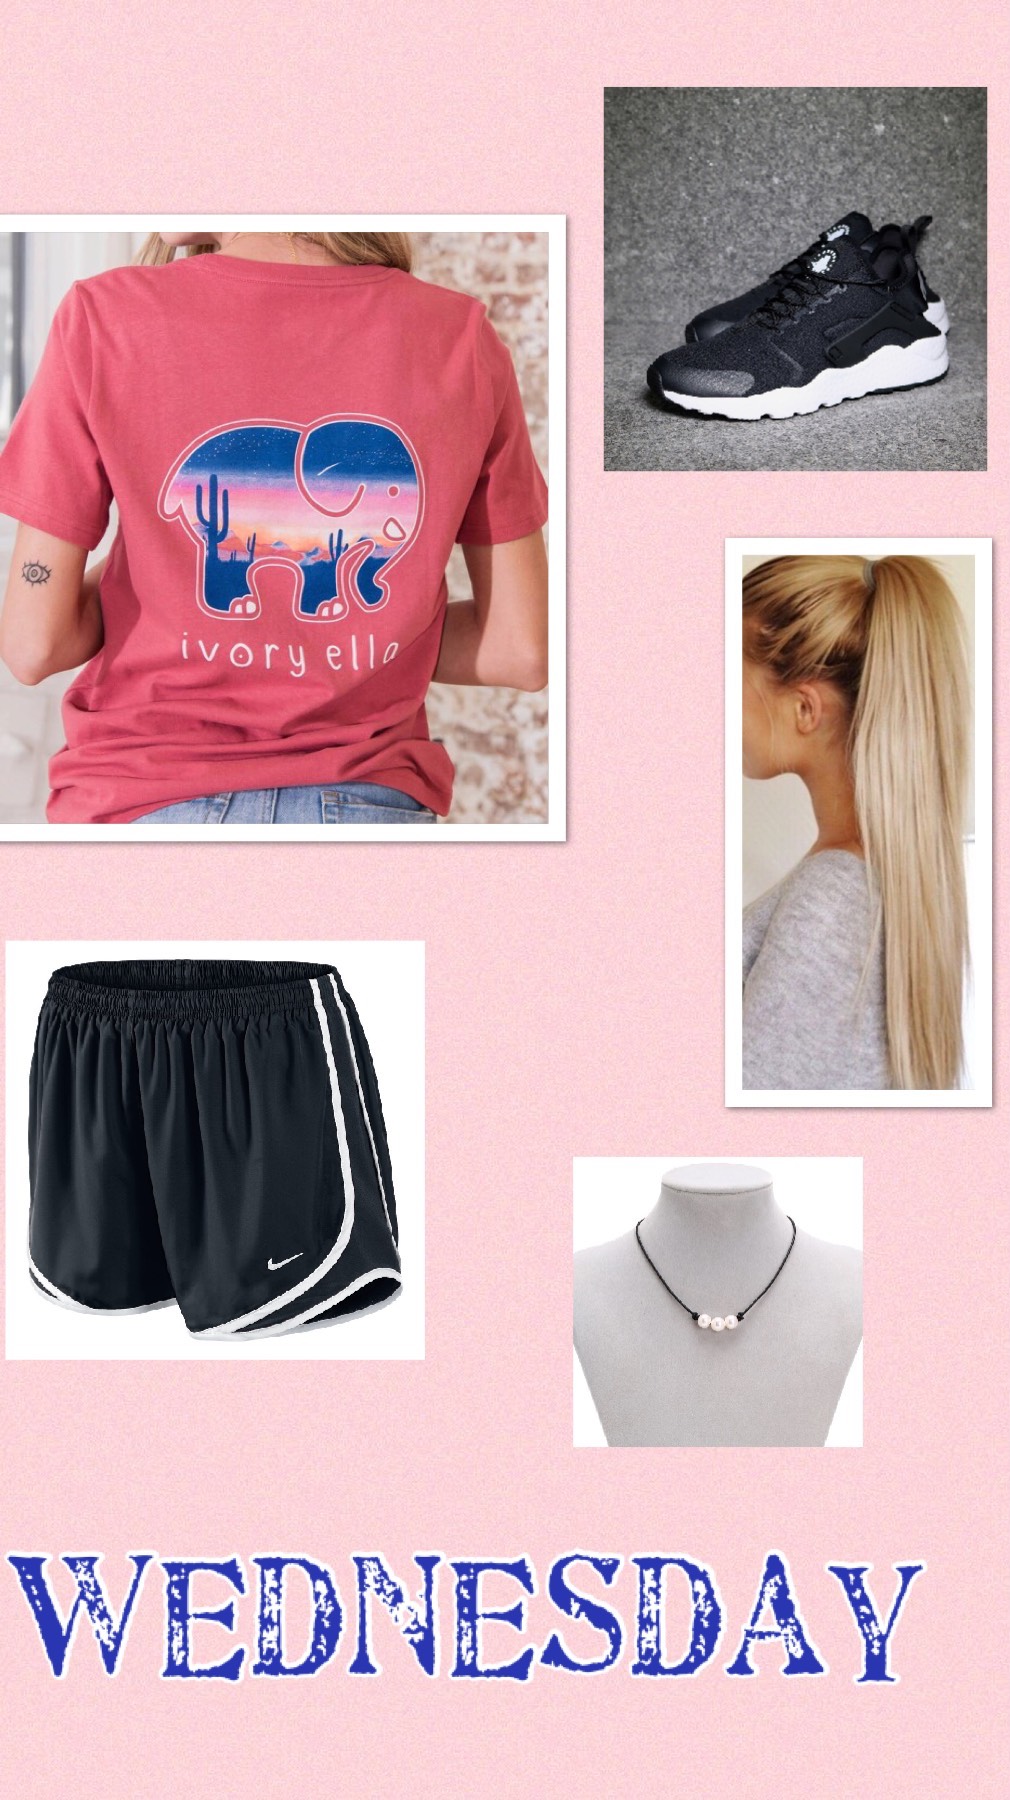 Wensday: Shirt-Ivory Ella  Shorts-Nike  Shoes-Huaraches  Necklace- Amazon. Hairstyle-pony tail